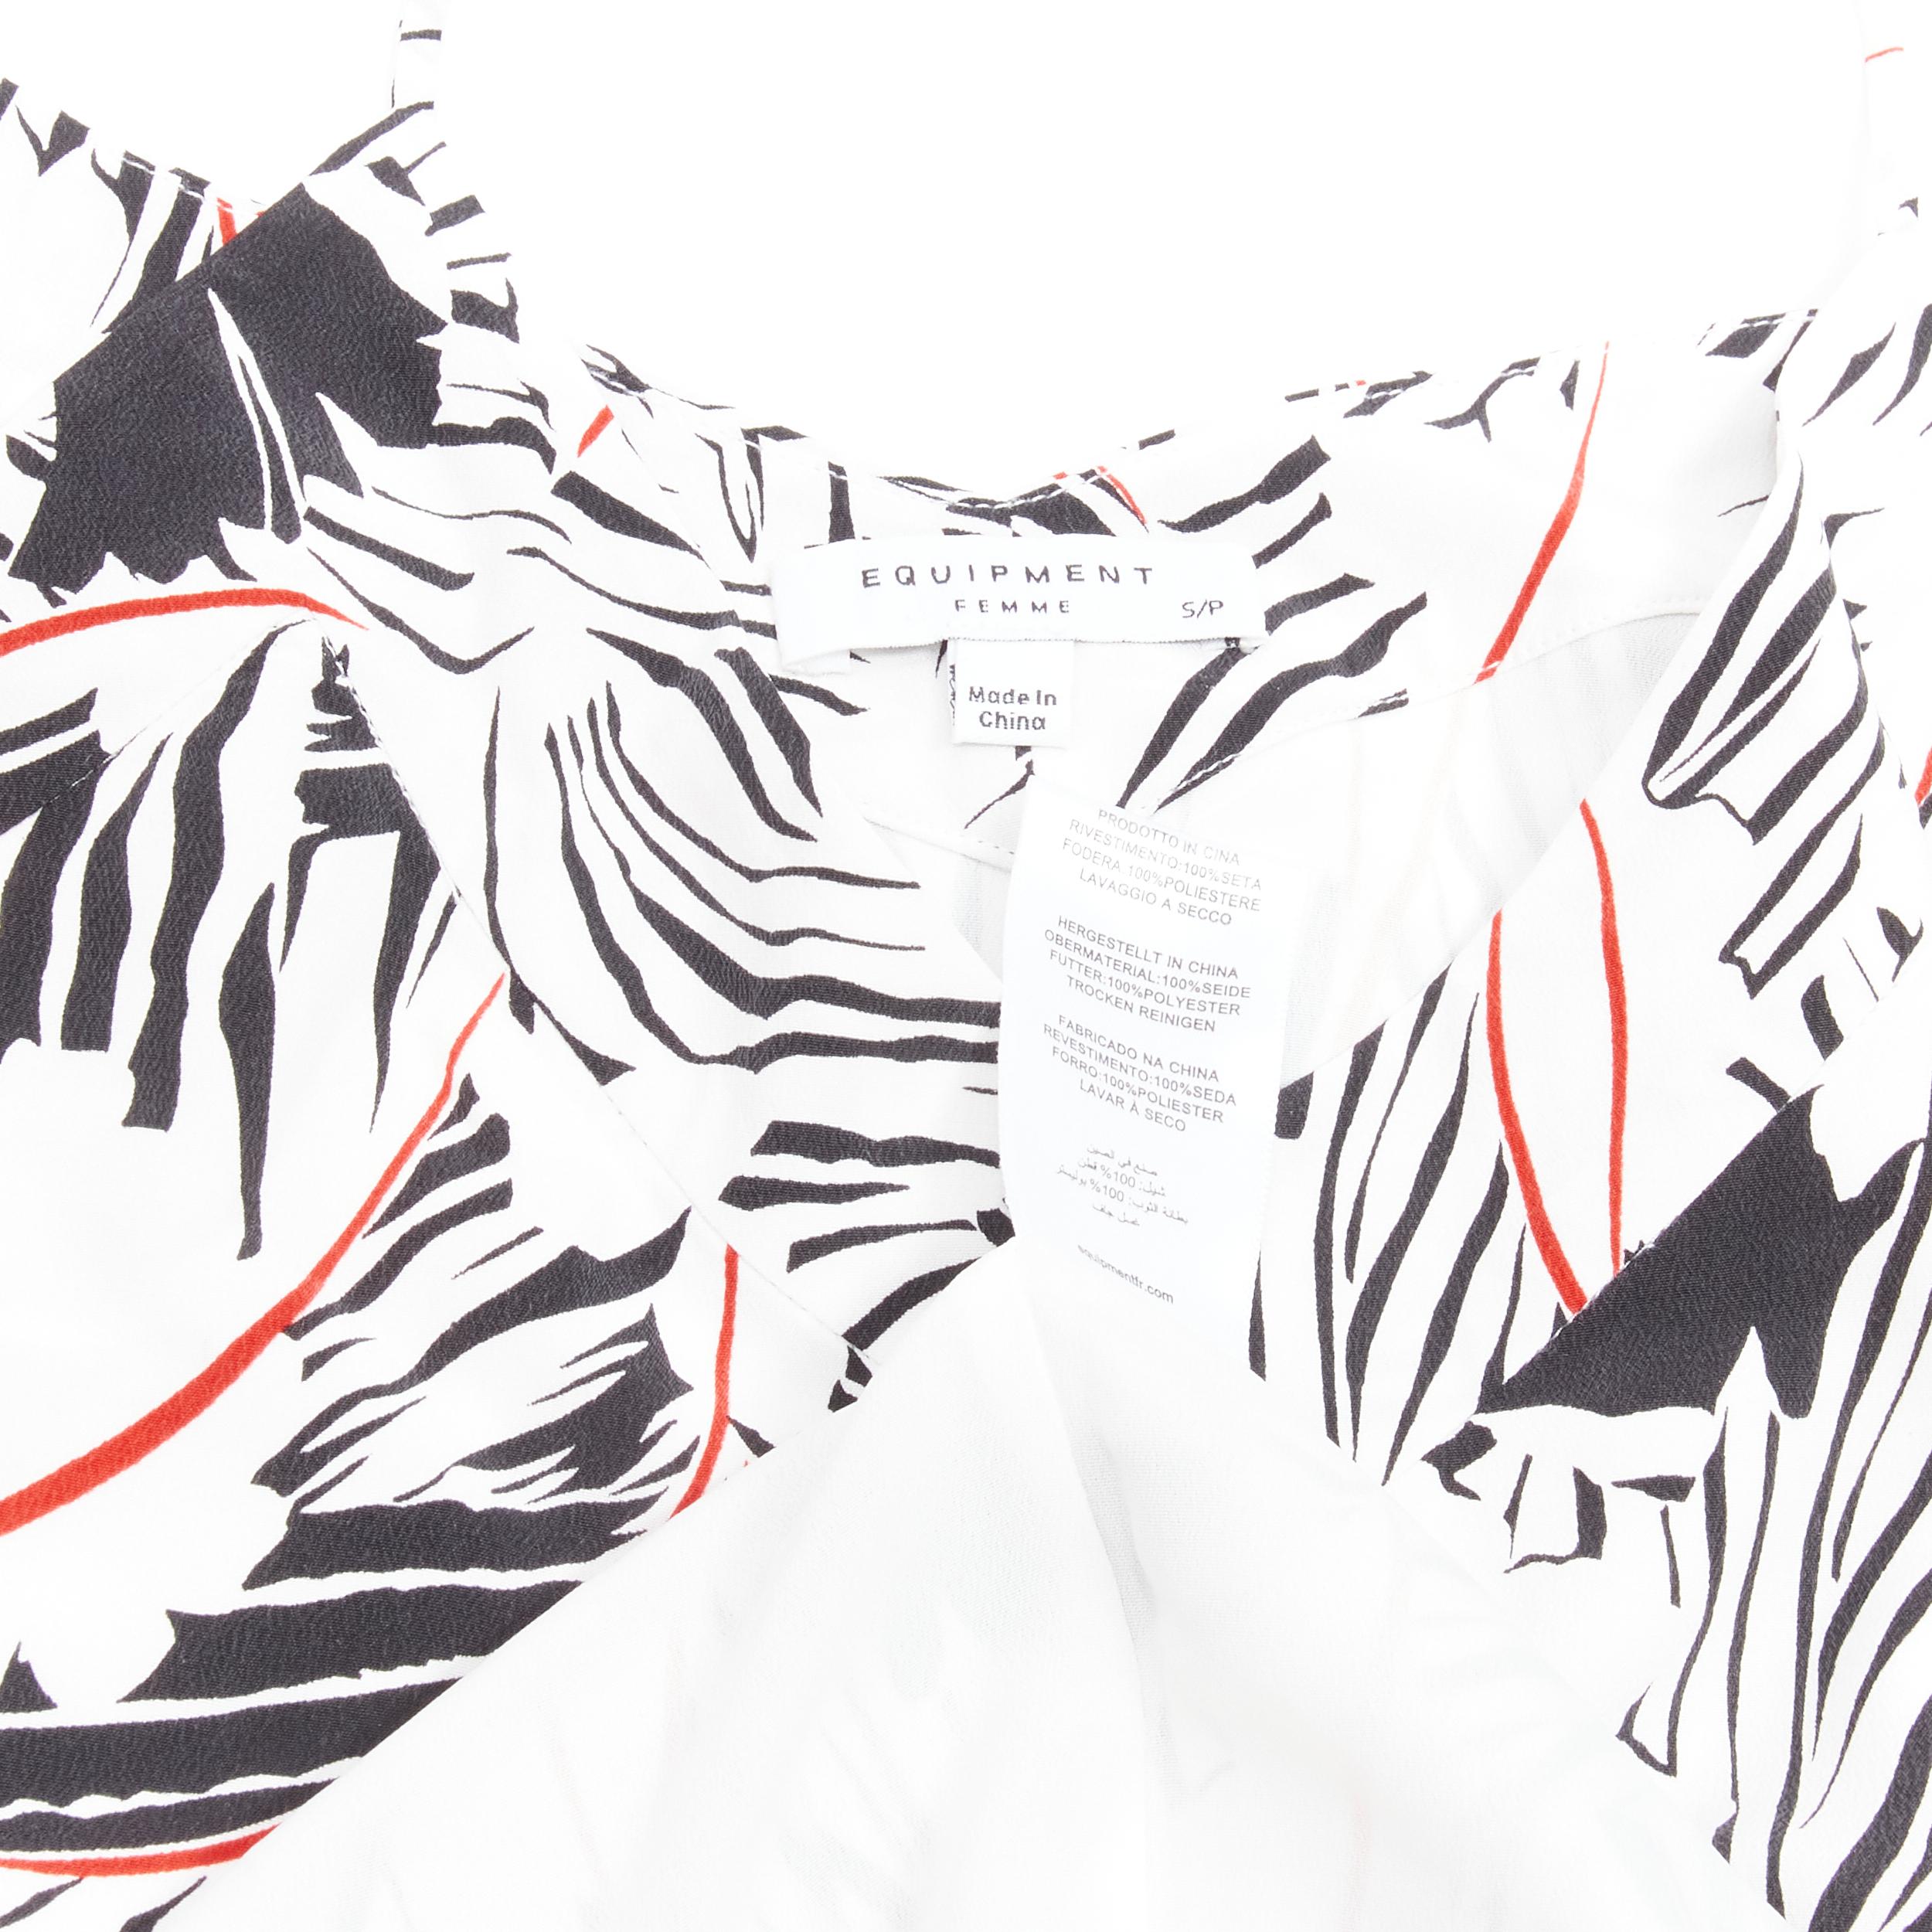 EQUIPMENT FEMME 100% silk white black red graphic print asymmetric slip dress S For Sale 1